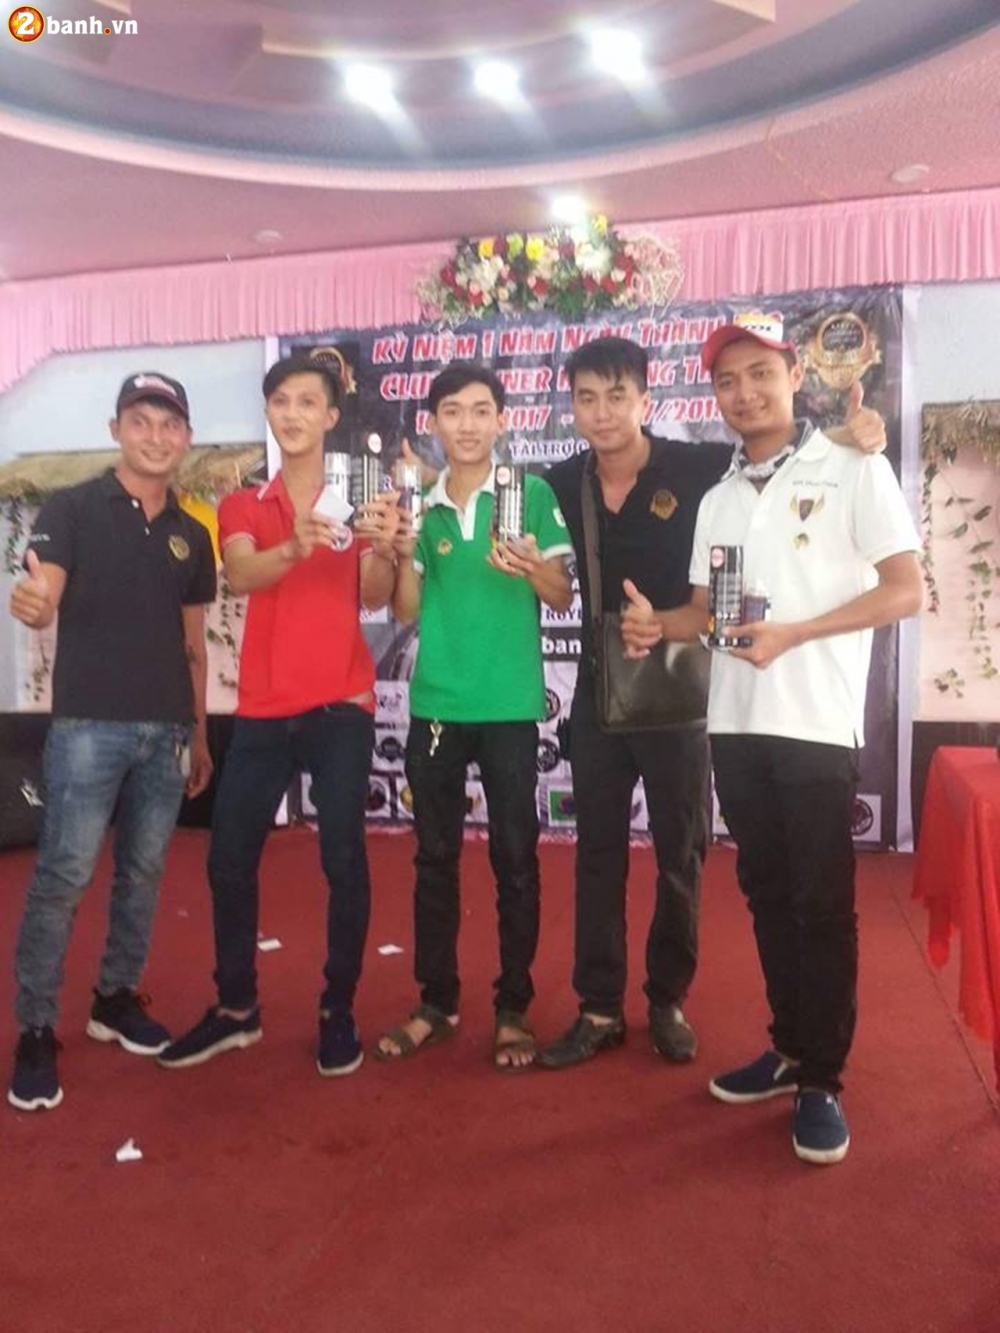 Club Winner Bui Long Thanh on lai ki niem sau 1 nam thanh lap - 12